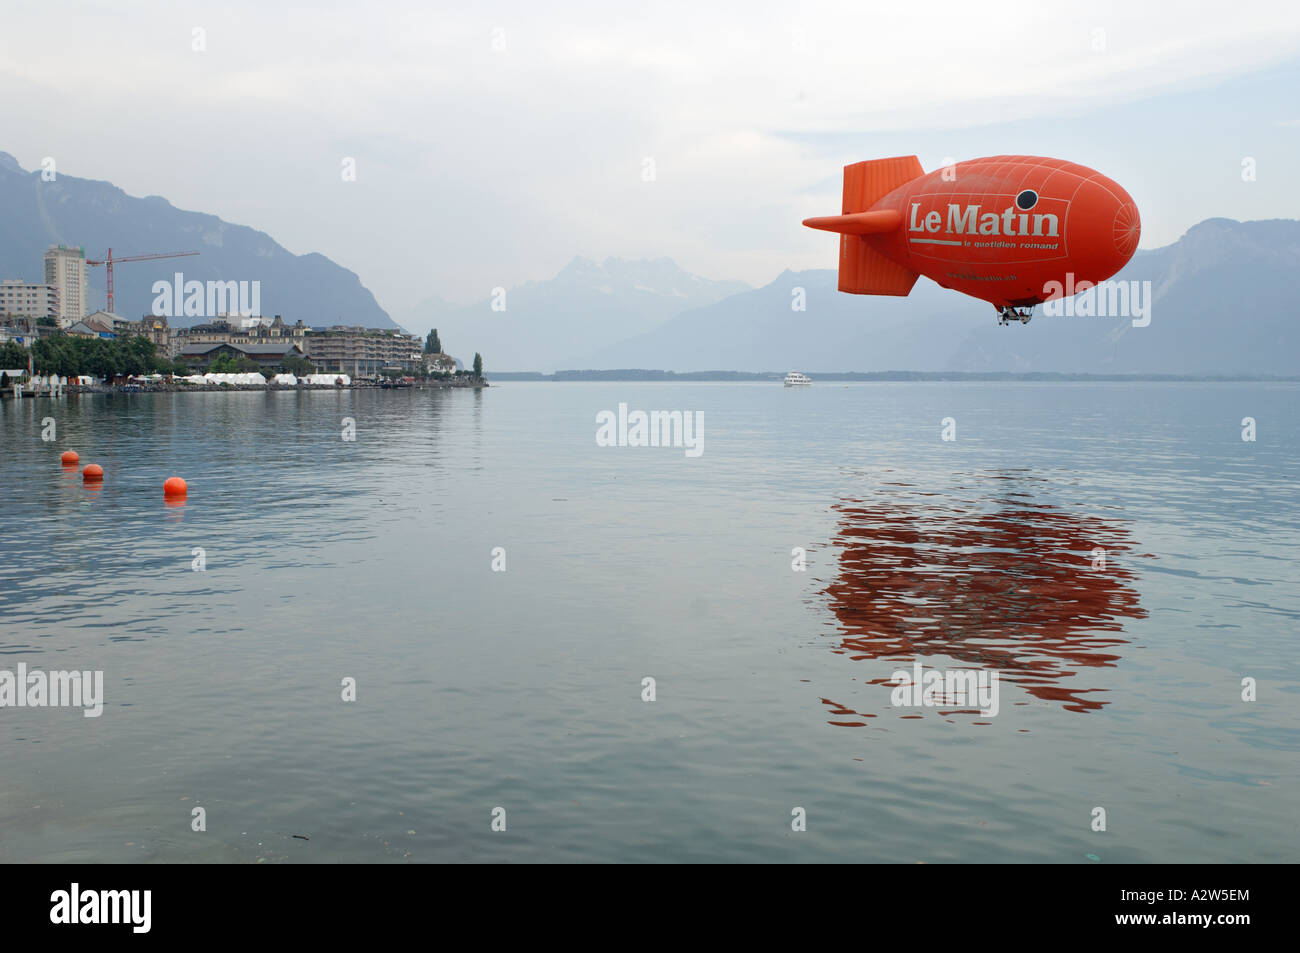 Le Matin Luftschiff über dem Genfersee Vevey Schweiz Stockfoto